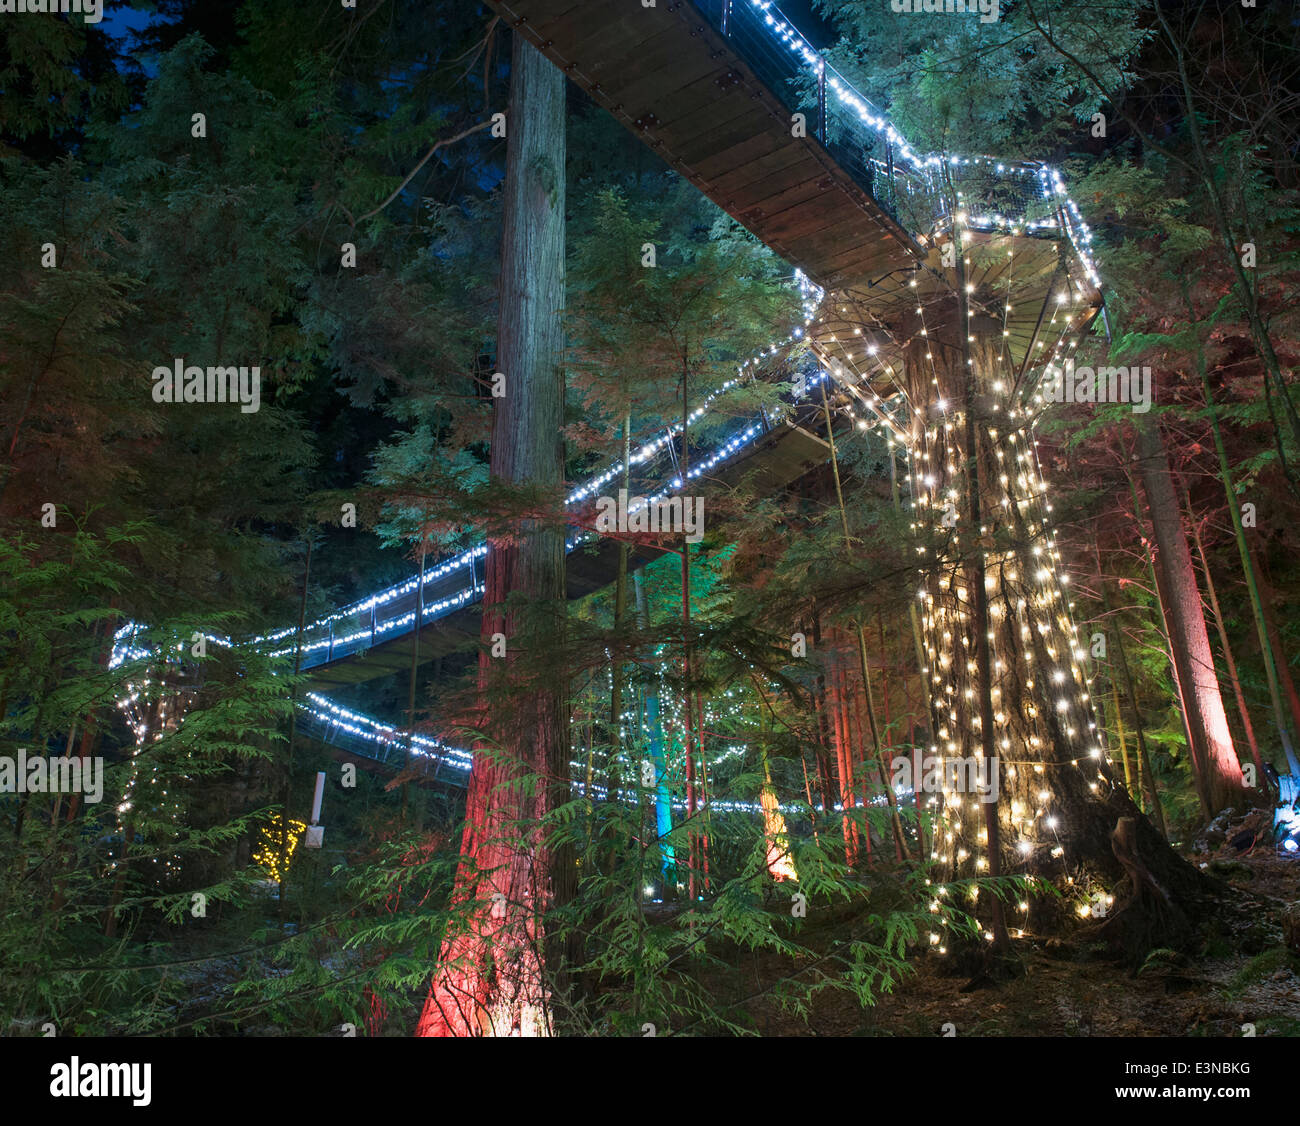 View of illuminated Capilano Suspension Bridge Park, Vancouver, British Columbia, Canada Stock Photo